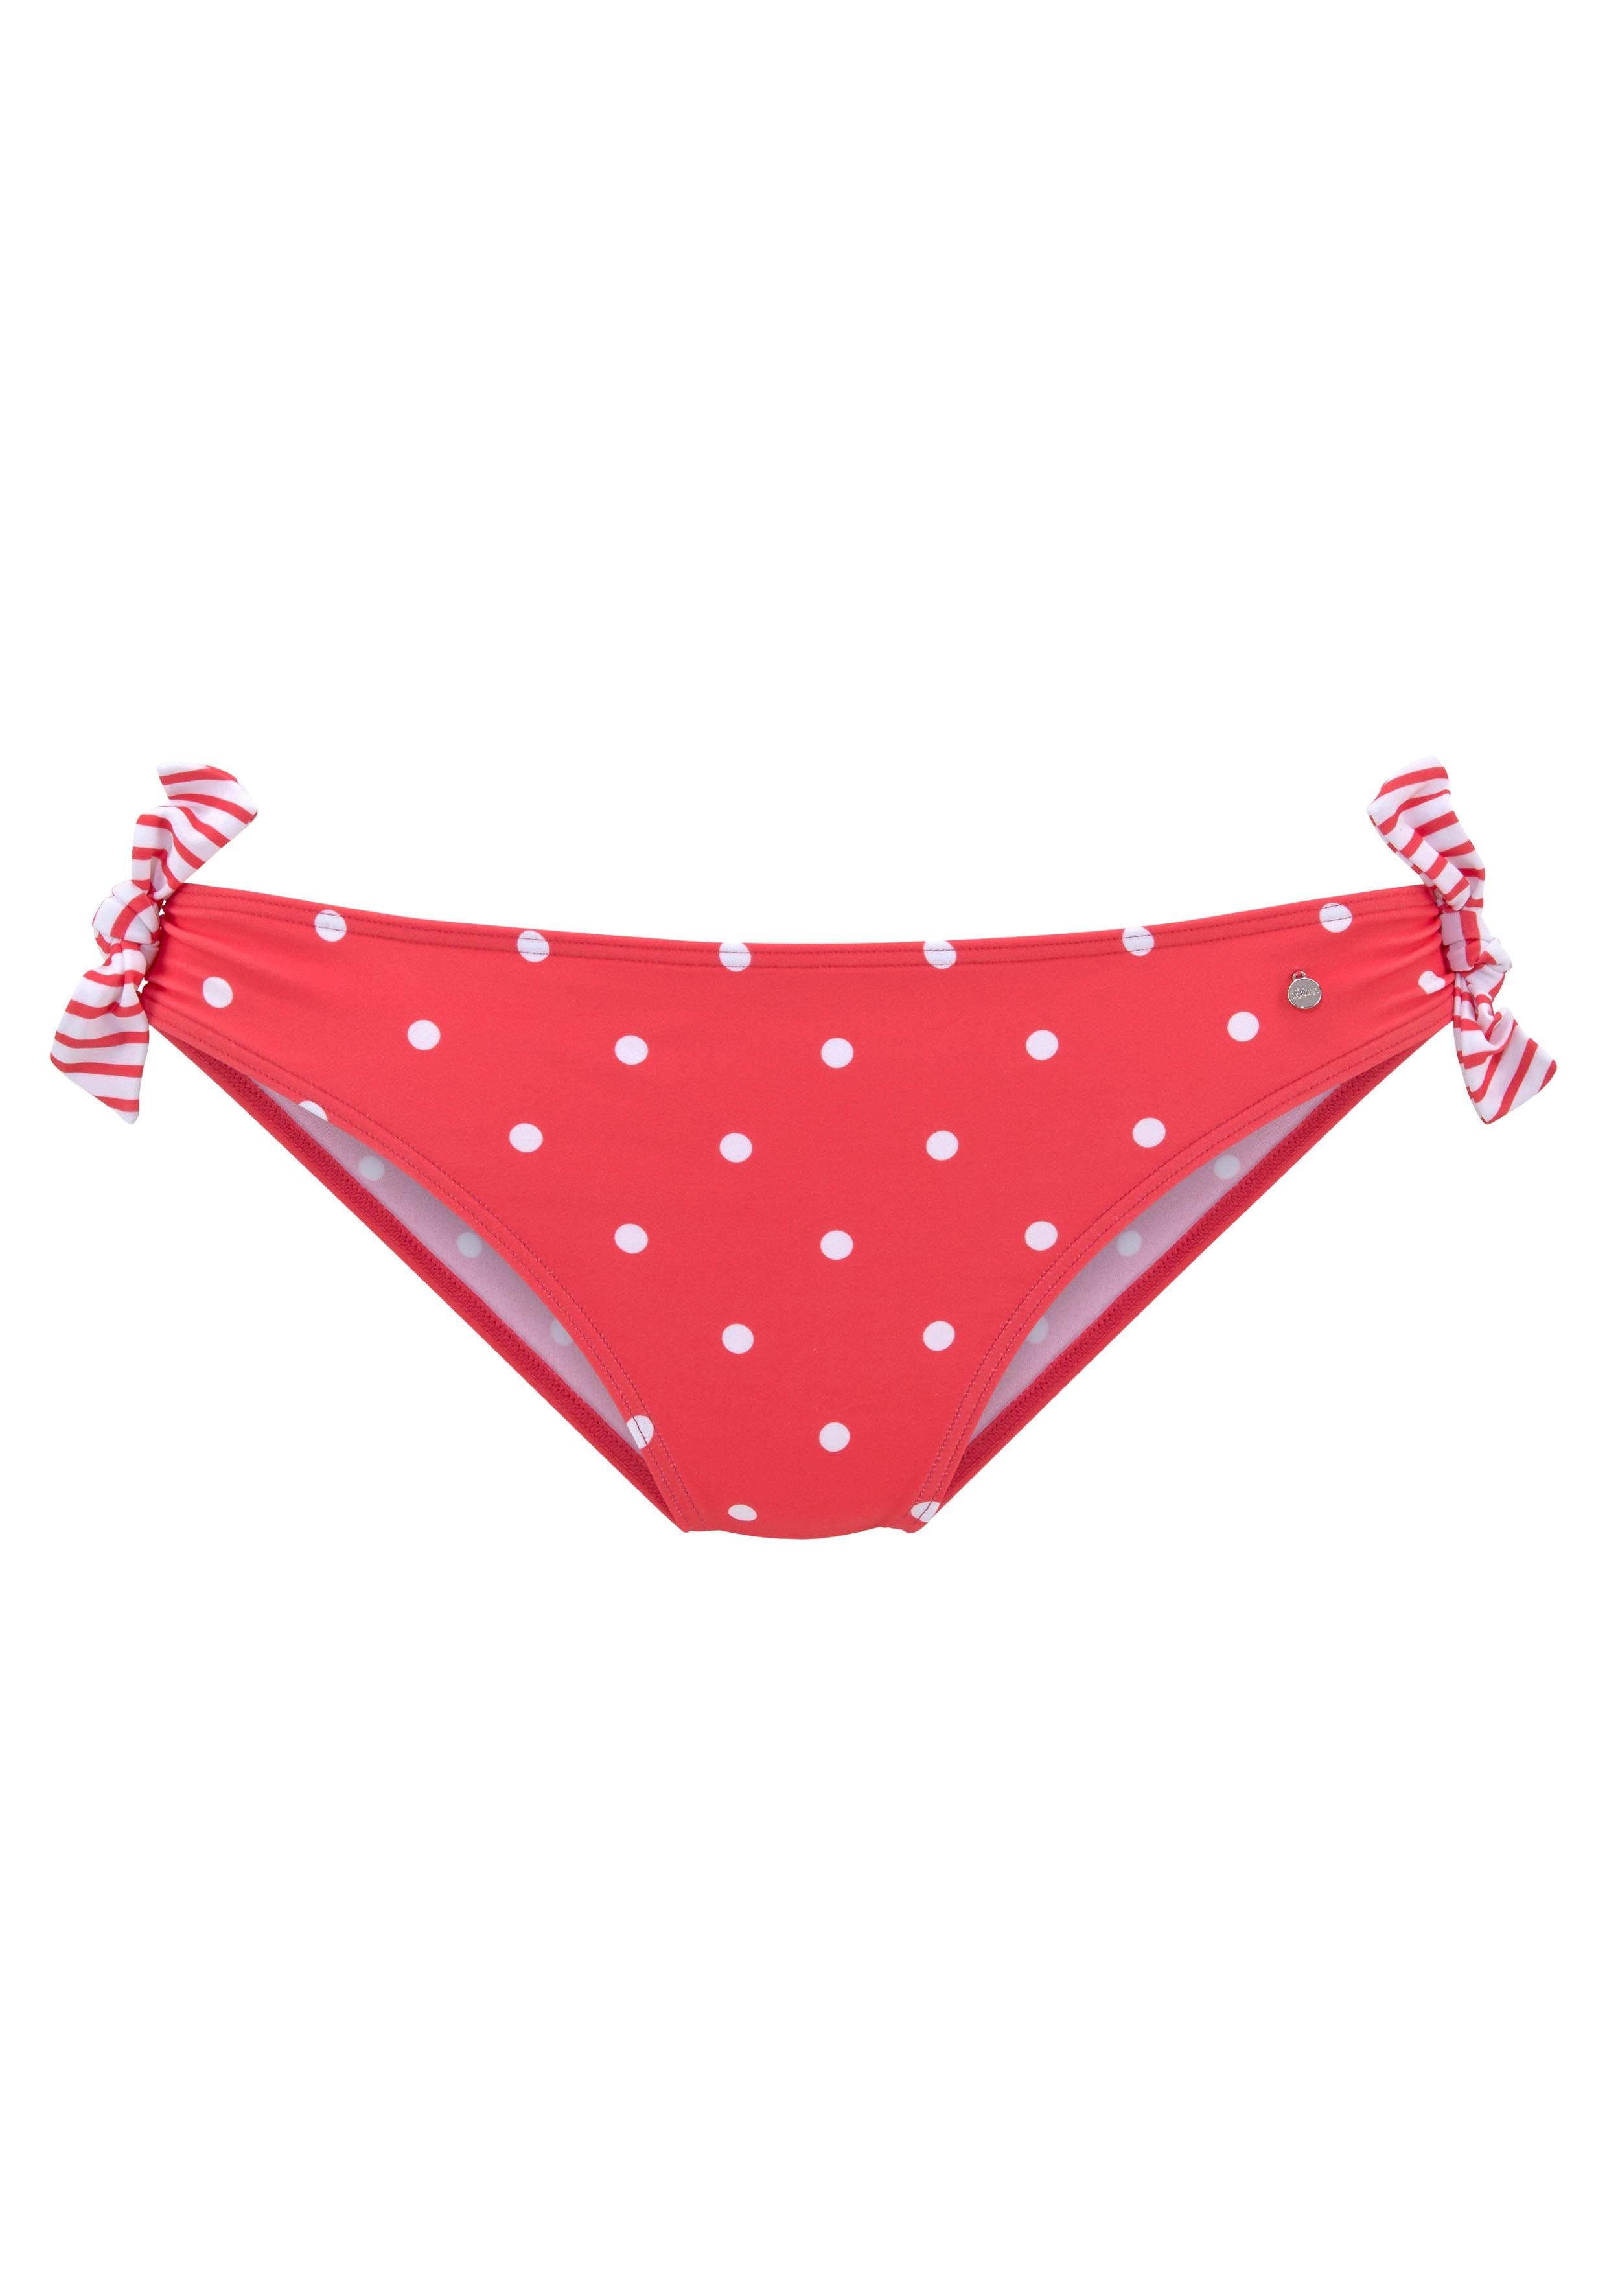 s.oliver red label beachwear bikinibroekje audrey met sierstrikje opzij rood